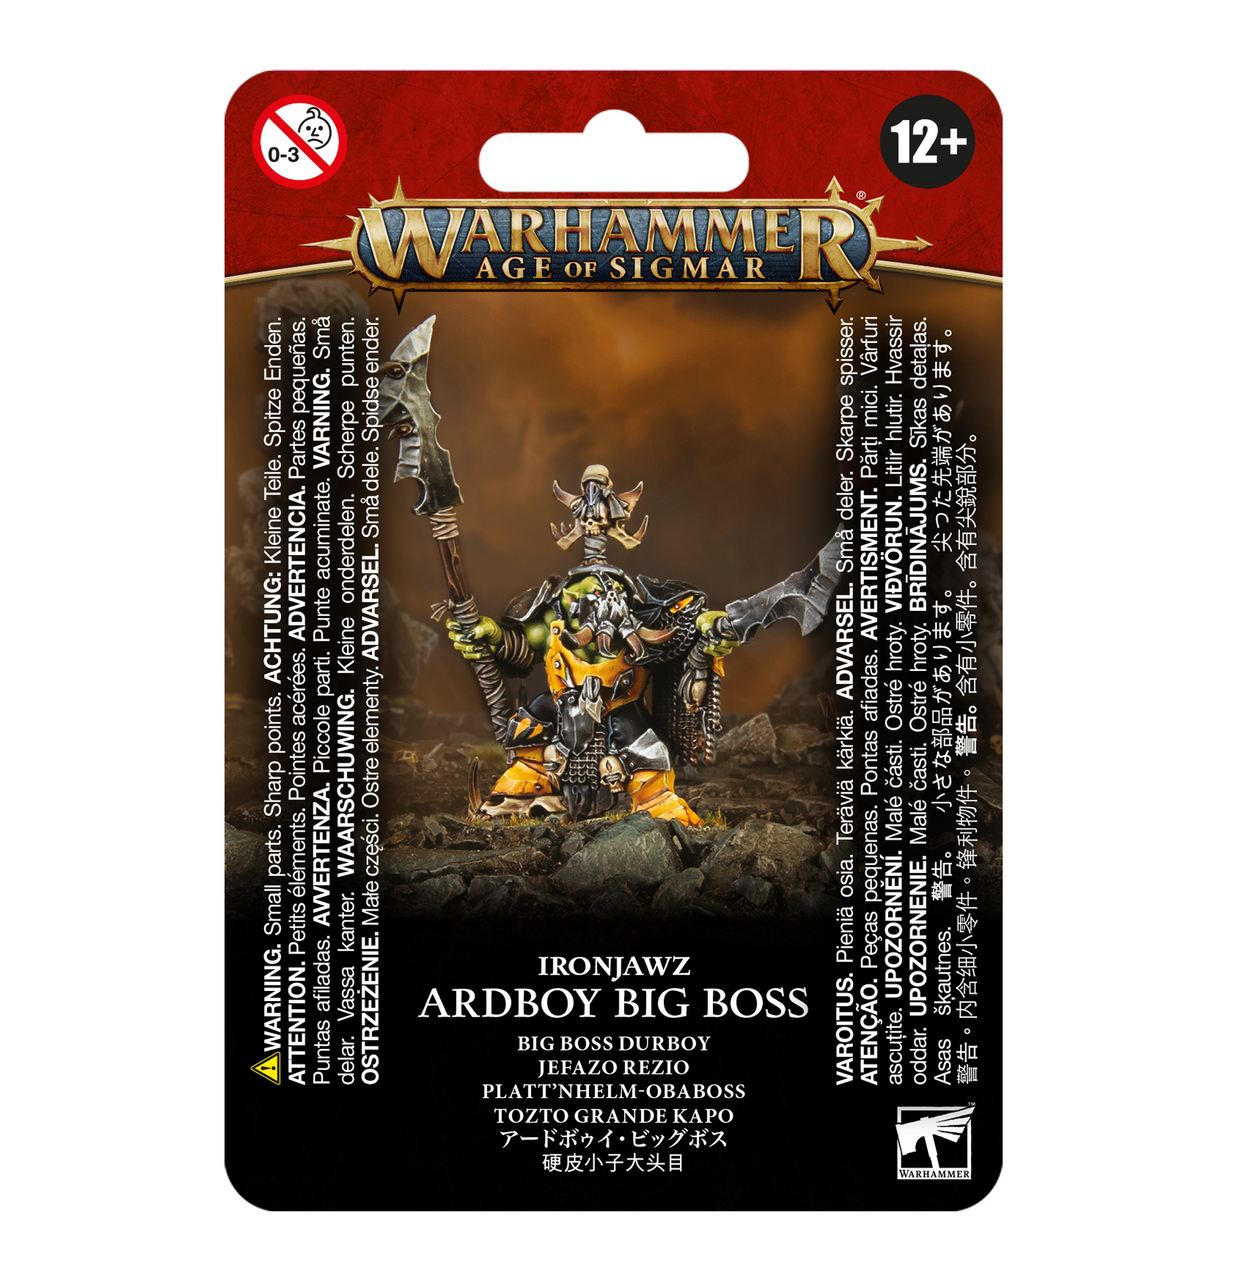 Warhammer Age of Sigmar Orruk Warclans: Ardboy Big Boss - Bards & Cards